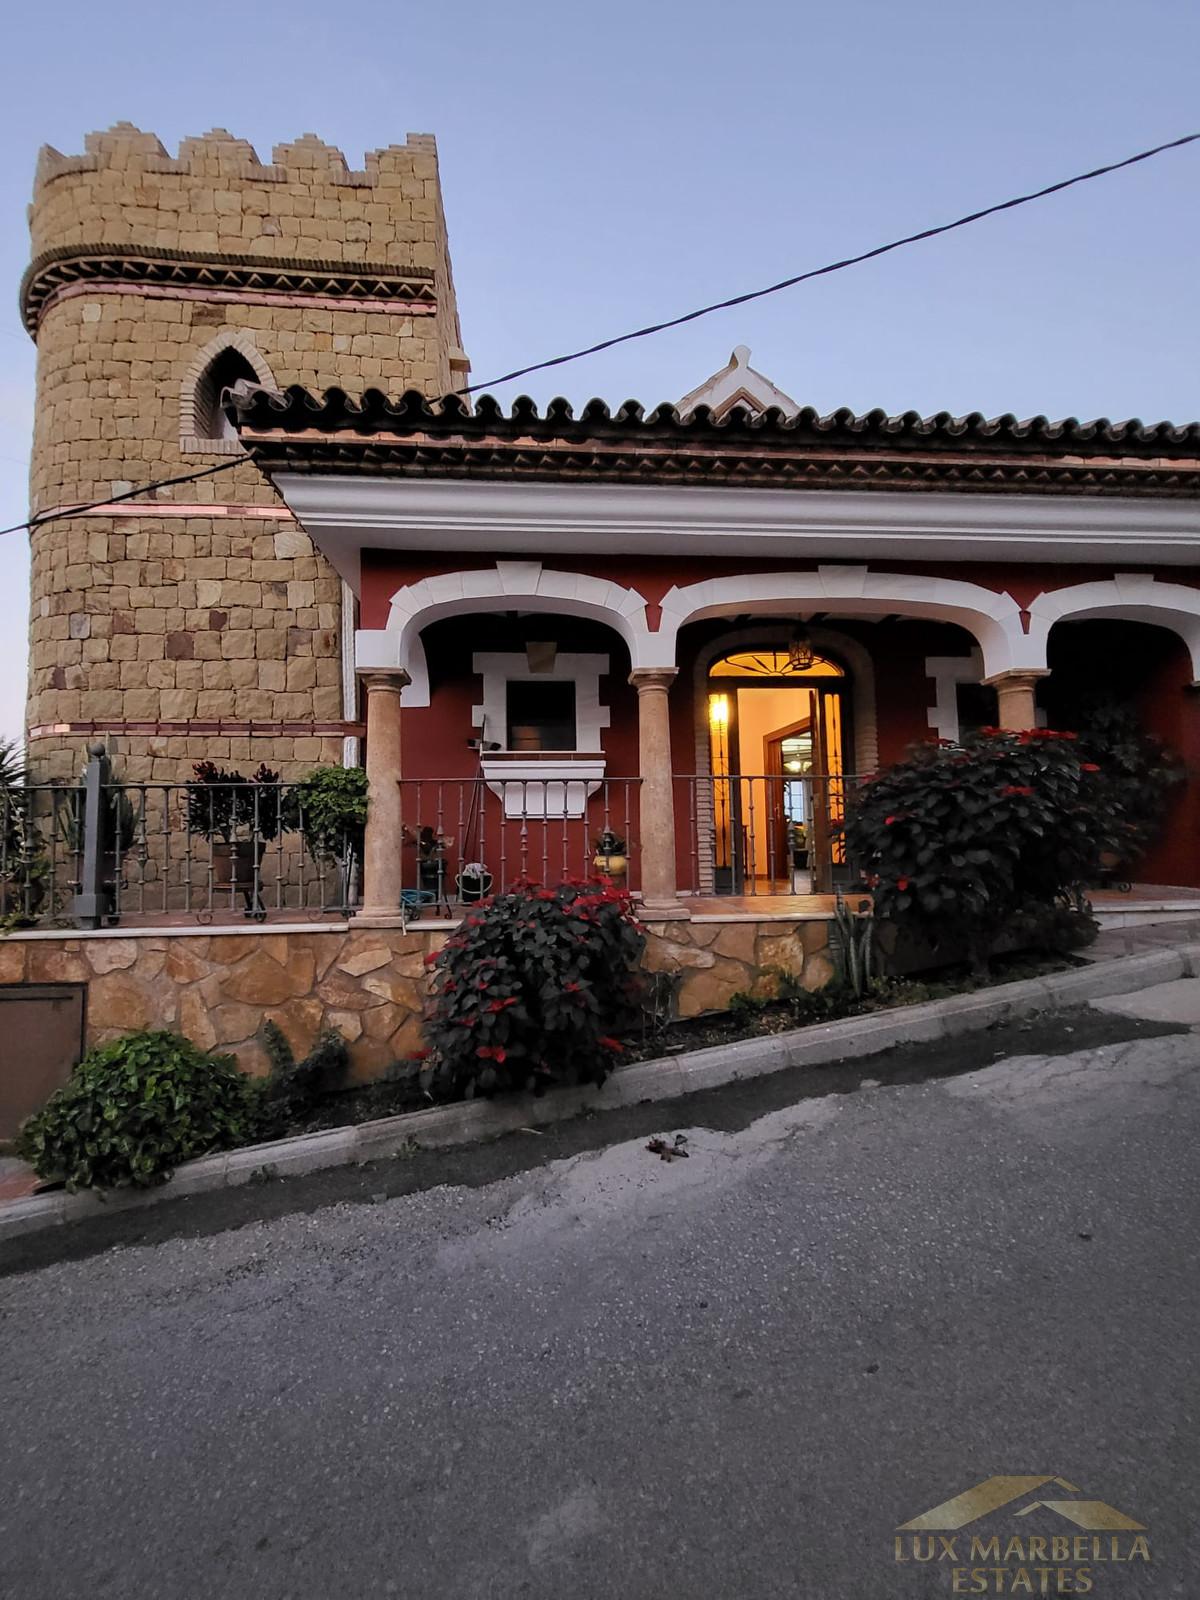 For sale of villa in La Cala de Mijas